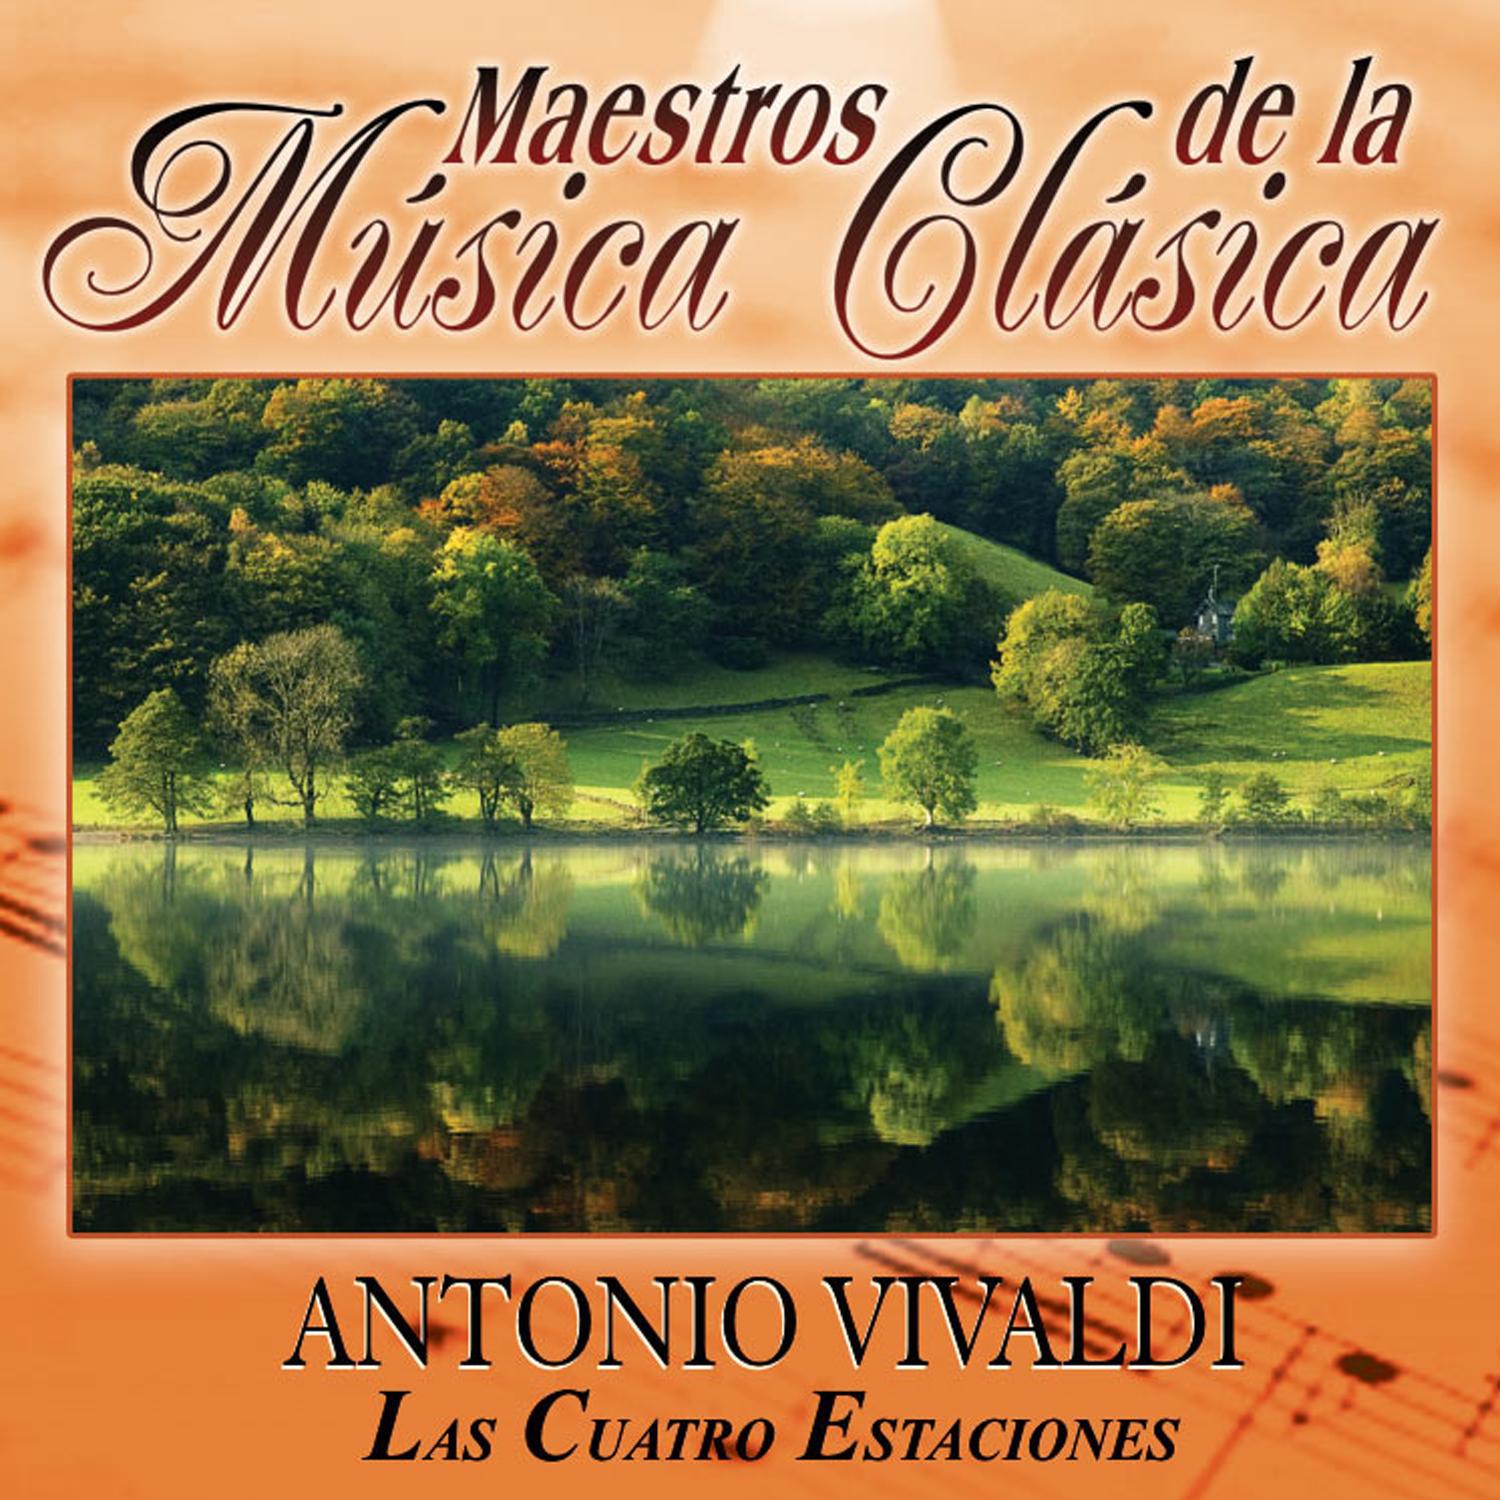 Maestros de la musica clasica - Antonio Vivaldi. Las Cuatro Estaciones专辑